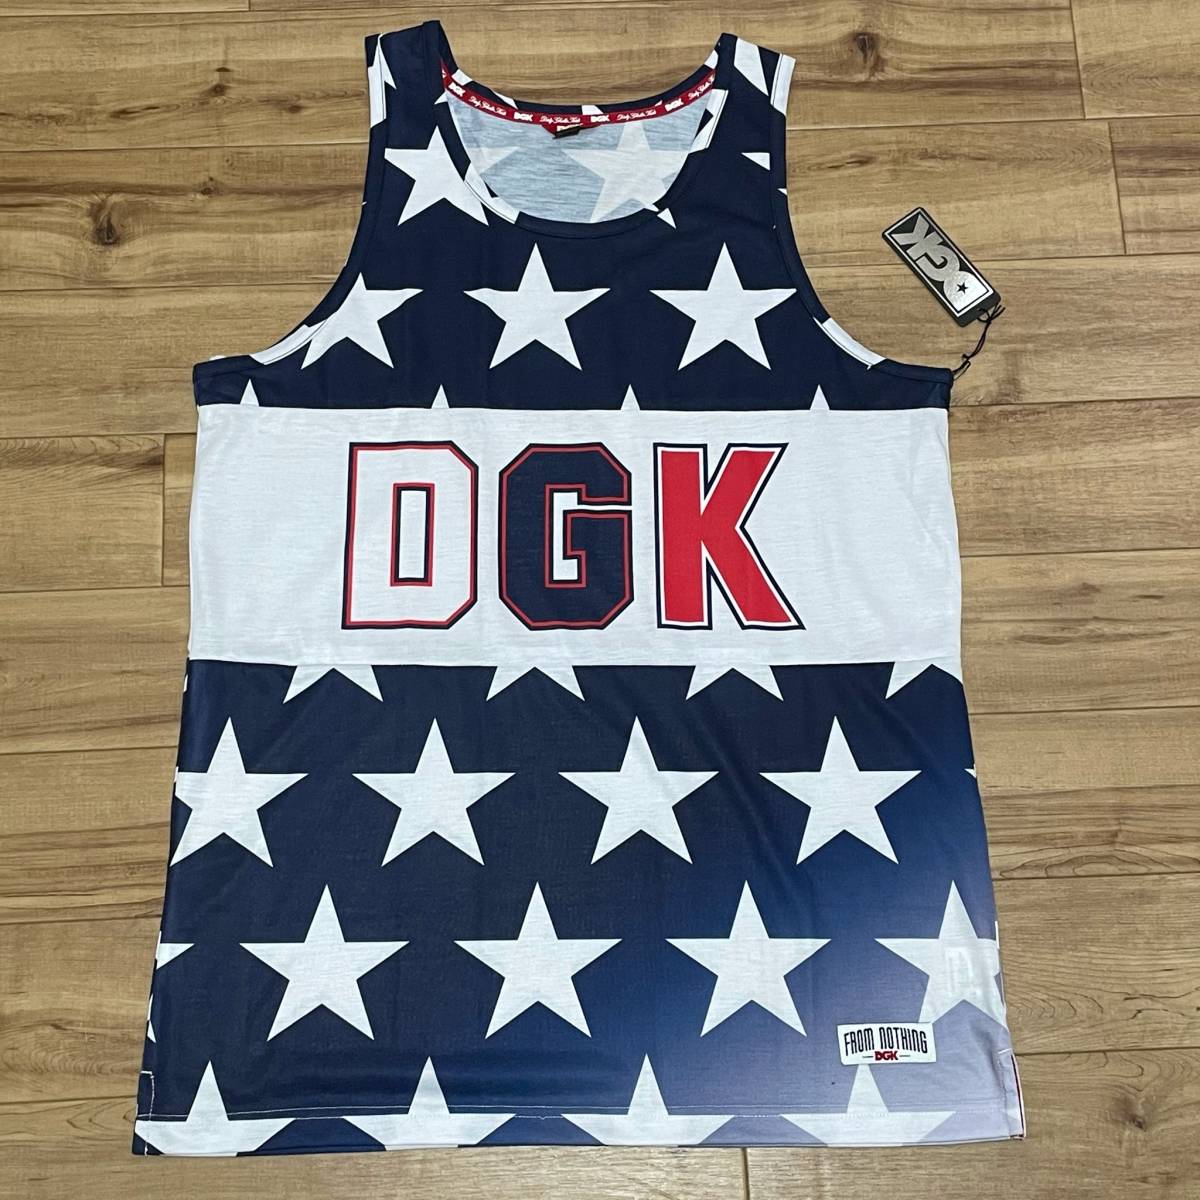 ロサンゼルス発祥 【XL】 DGK ディージーケー タンクトップ 星条旗 USA スケーターブランド ストリート HIPHOP カリフォルニア